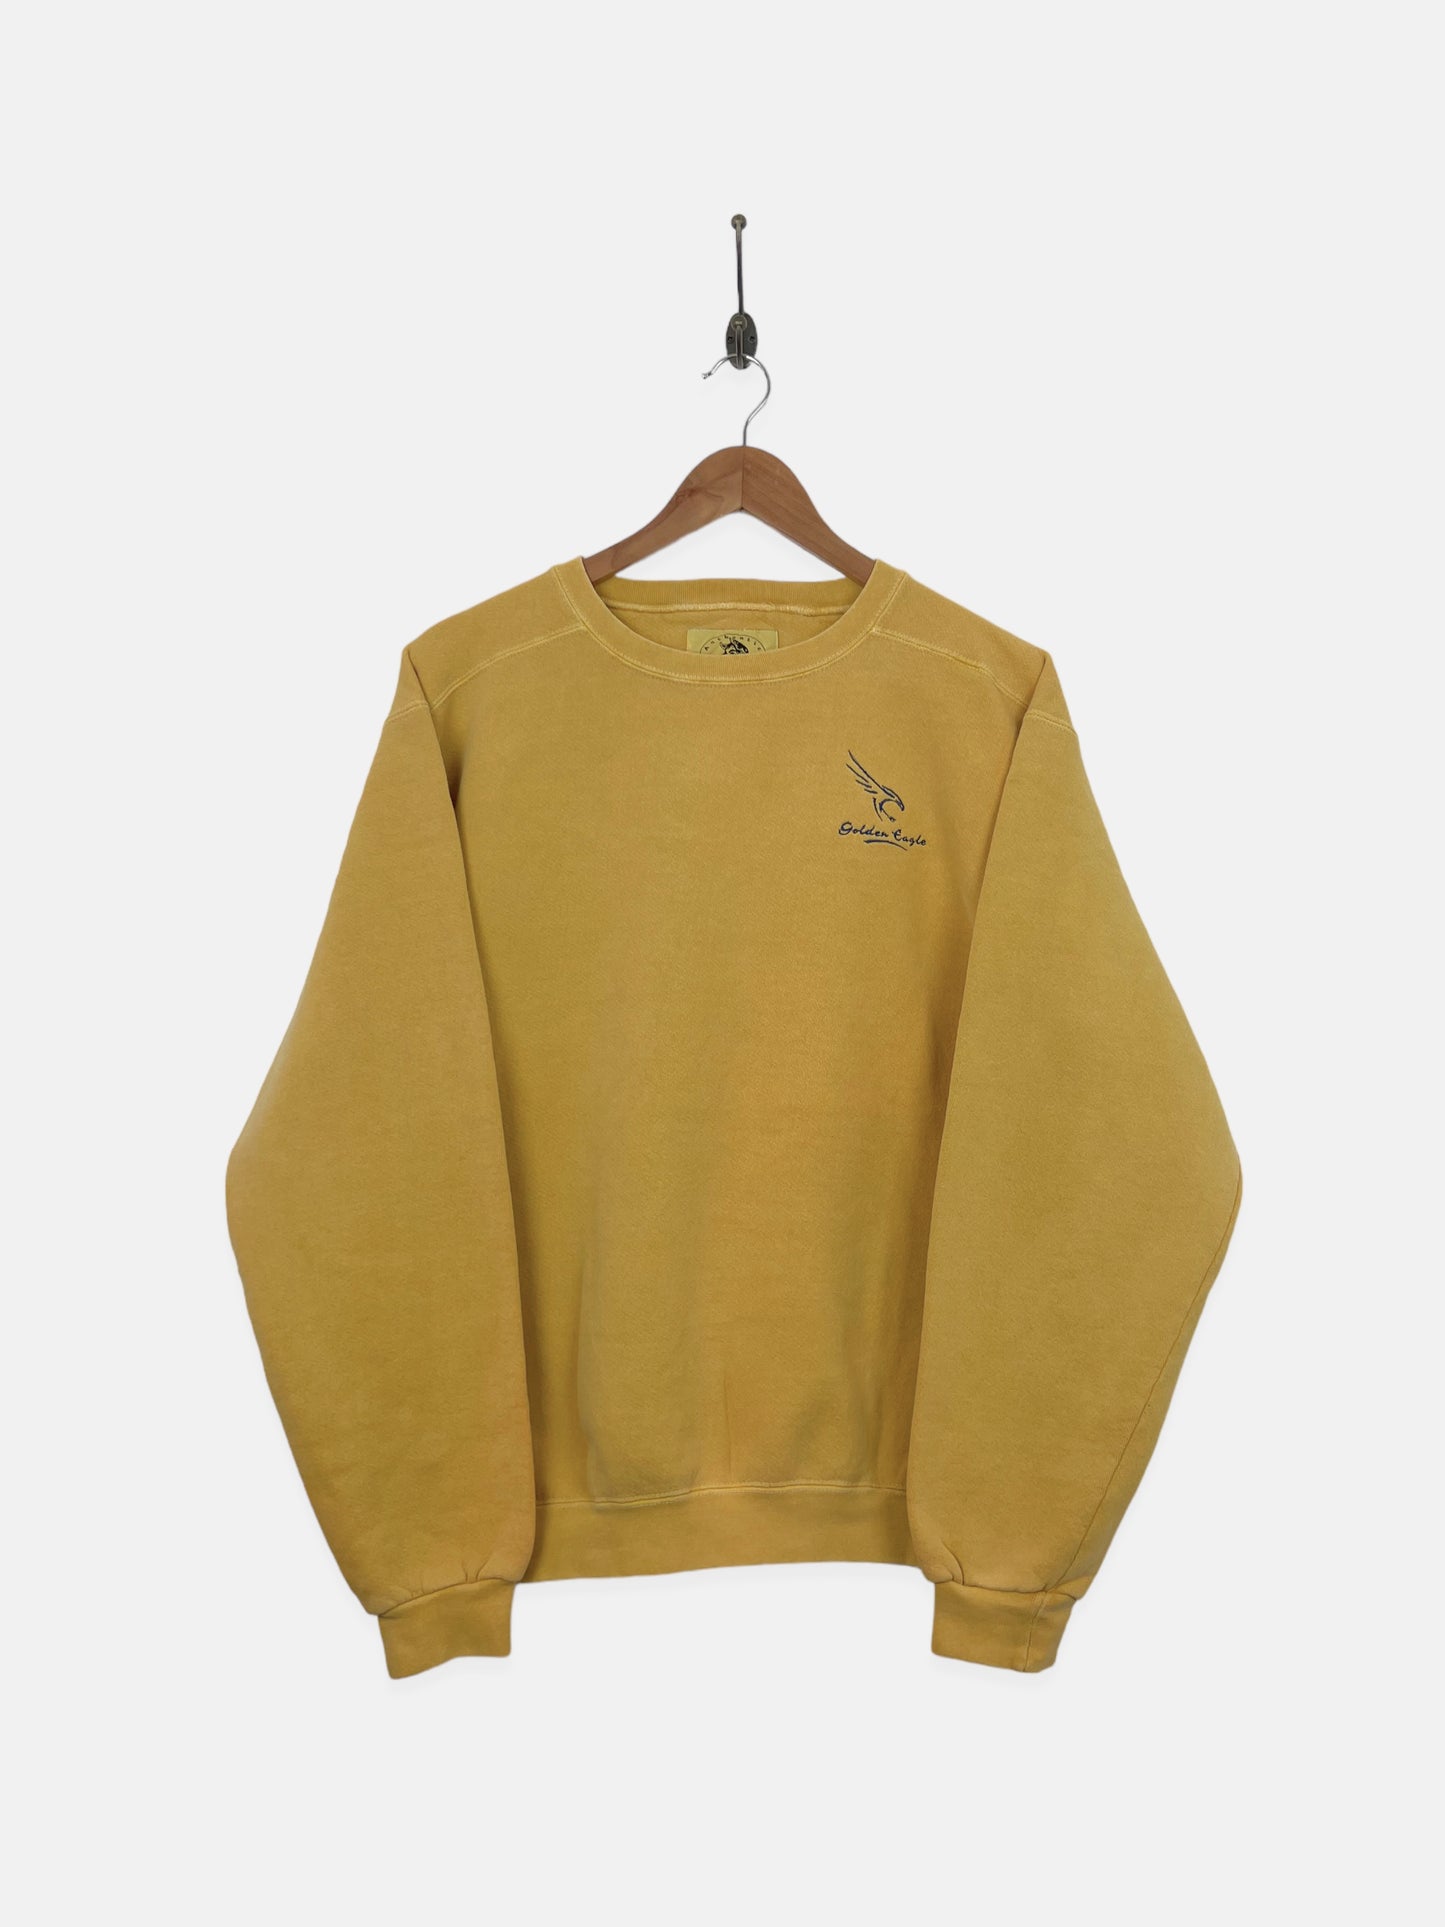 90's Golden Eagle Embroidered Vintage Sweatshirt Size 10-12